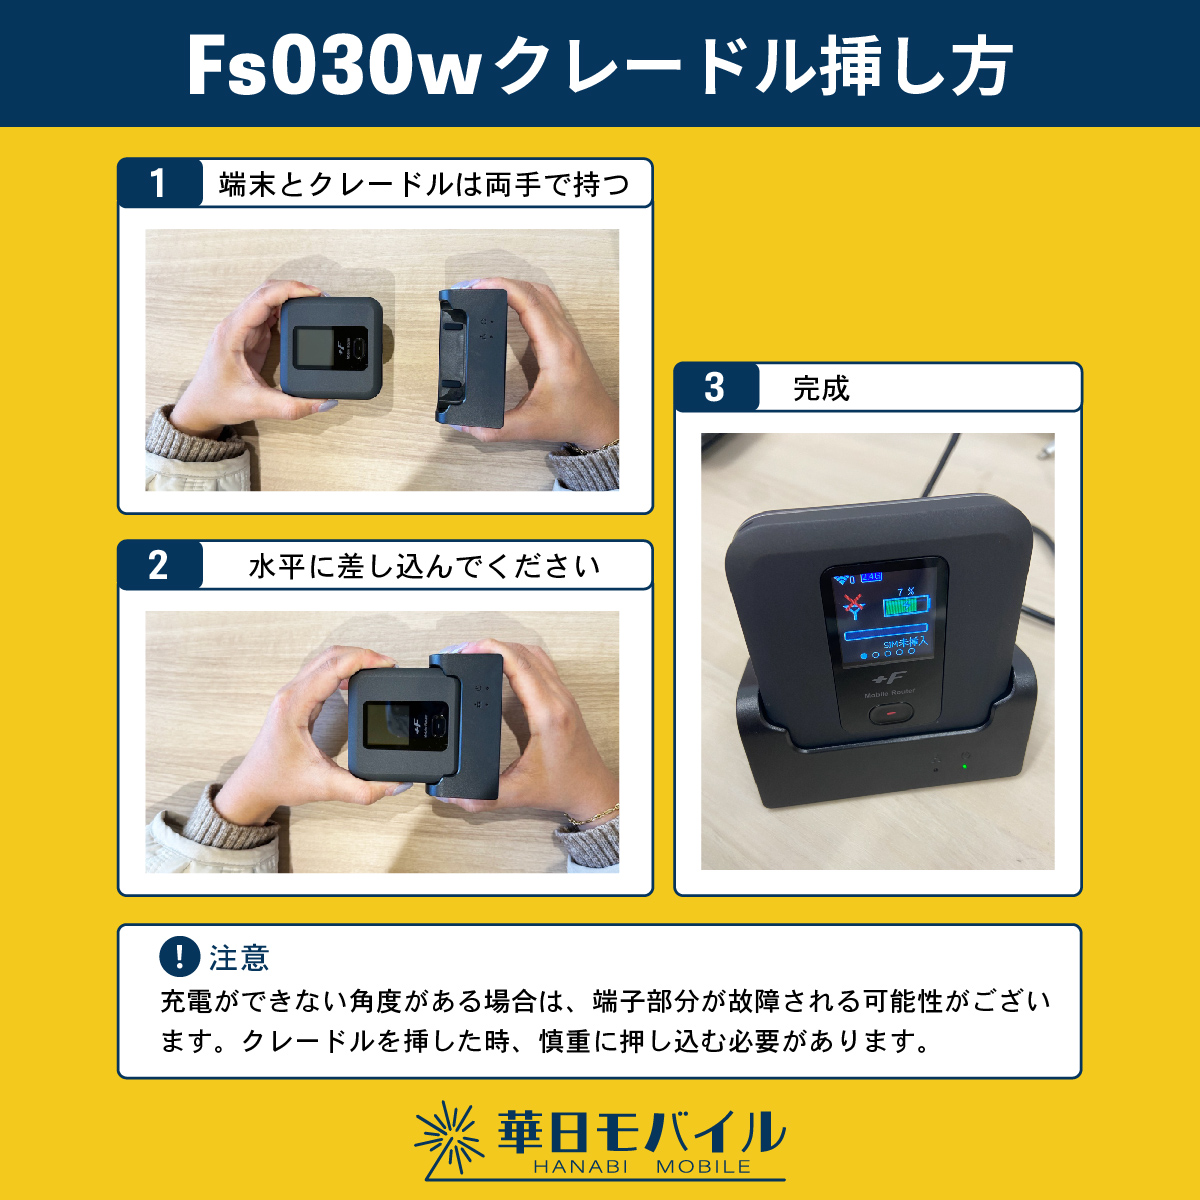  Fuji soft [ set FS030W terminal + cradle ] +F FS030W FS030WMB1